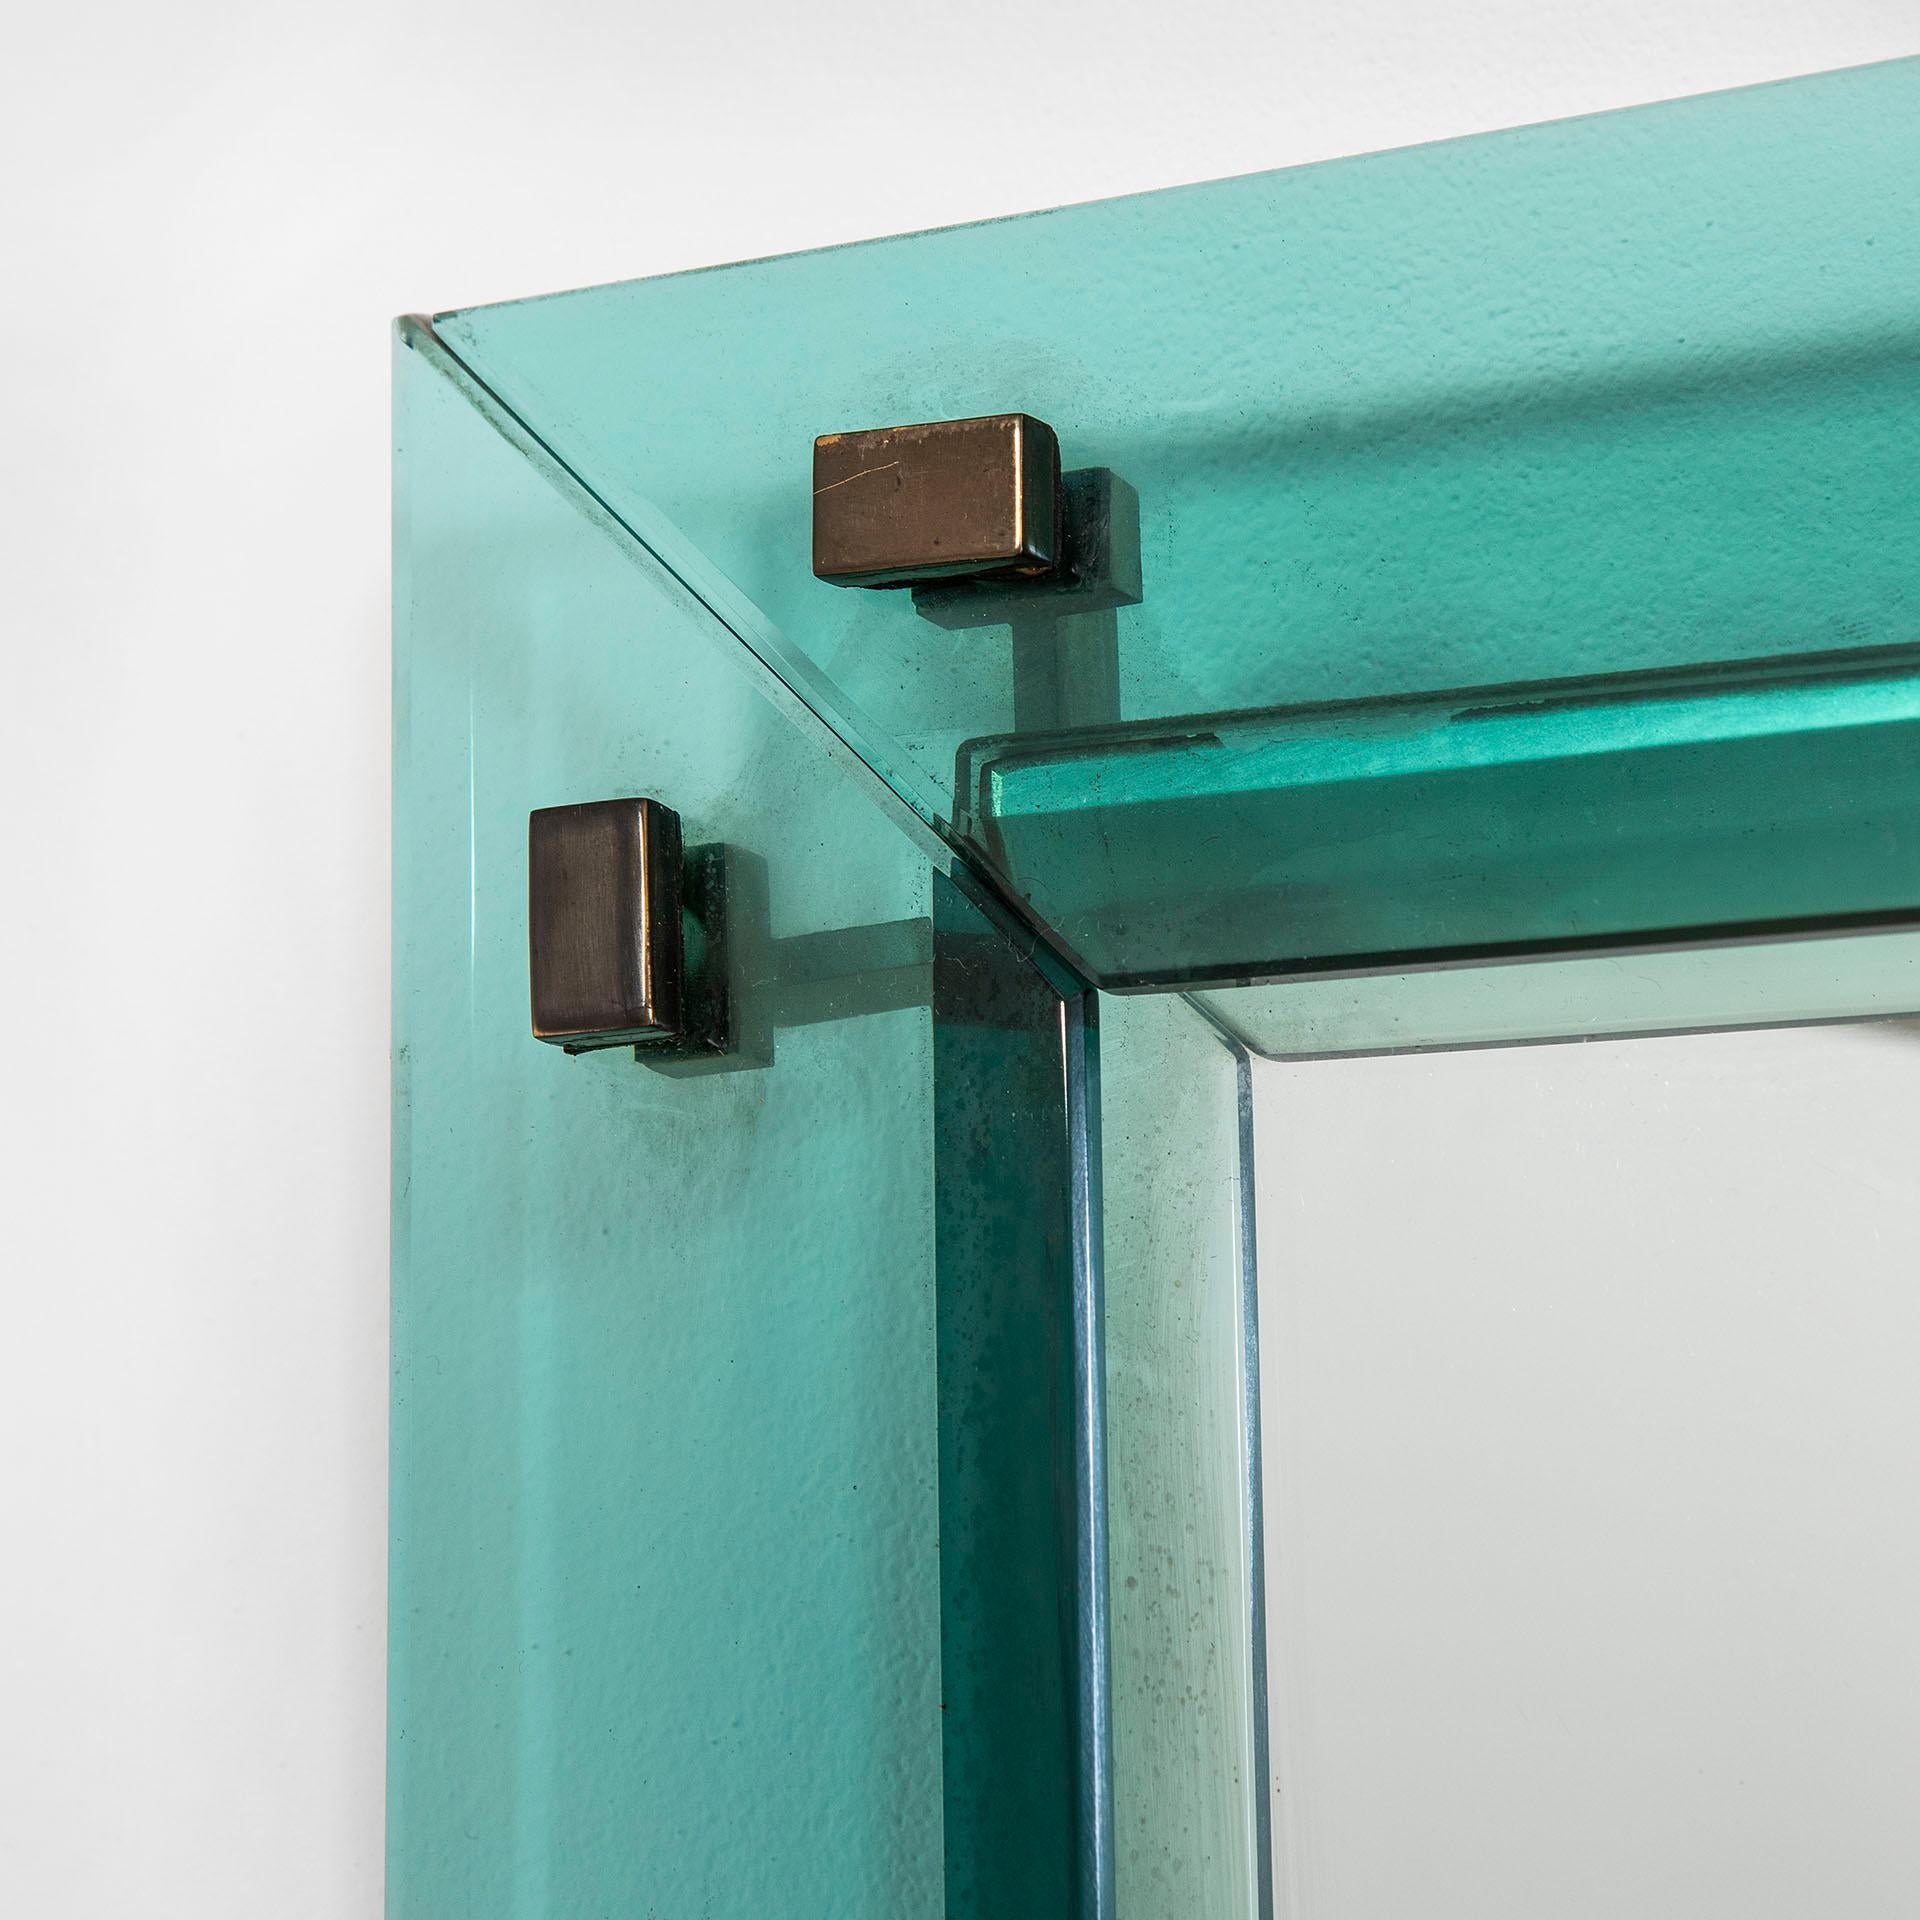 Wandspiegel, entworfen vom Meister des Glases Max Ingrand für Fontana Arte in den 50er Jahren. Der Spiegel hat einen wunderschönen Rahmen aus farbigem und geschliffenem Kristall, die Farbe ist ein helles Blau. Der Spiegel selbst befindet sich hinter